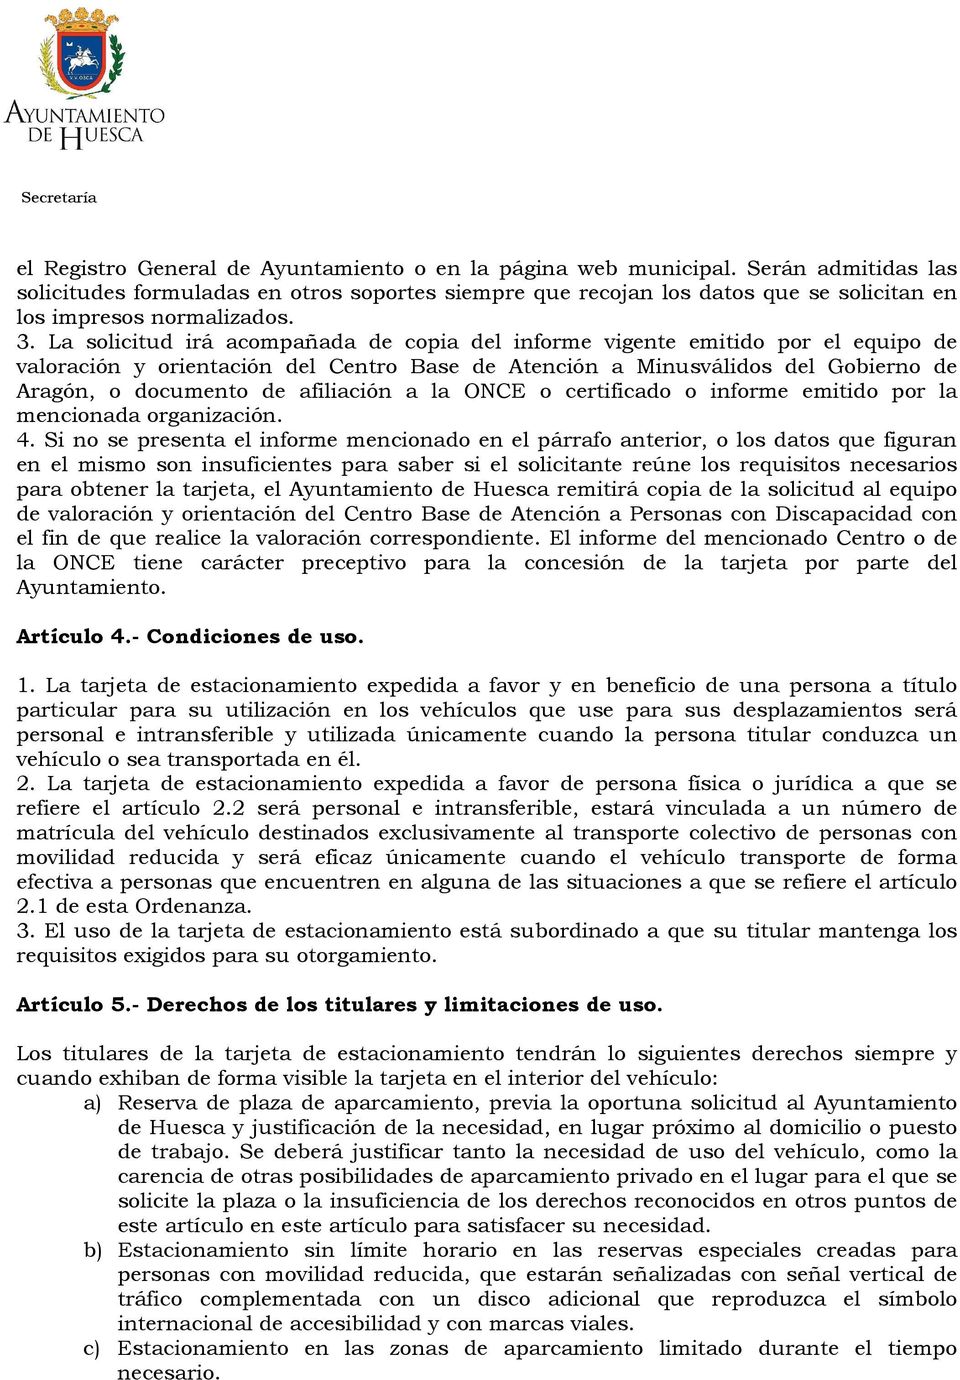 La solicitud irá acompañada de copia del informe vigente emitido por el equipo de valoración y orientación del Centro Base de Atención a Minusválidos del Gobierno de Aragón, o documento de afiliación